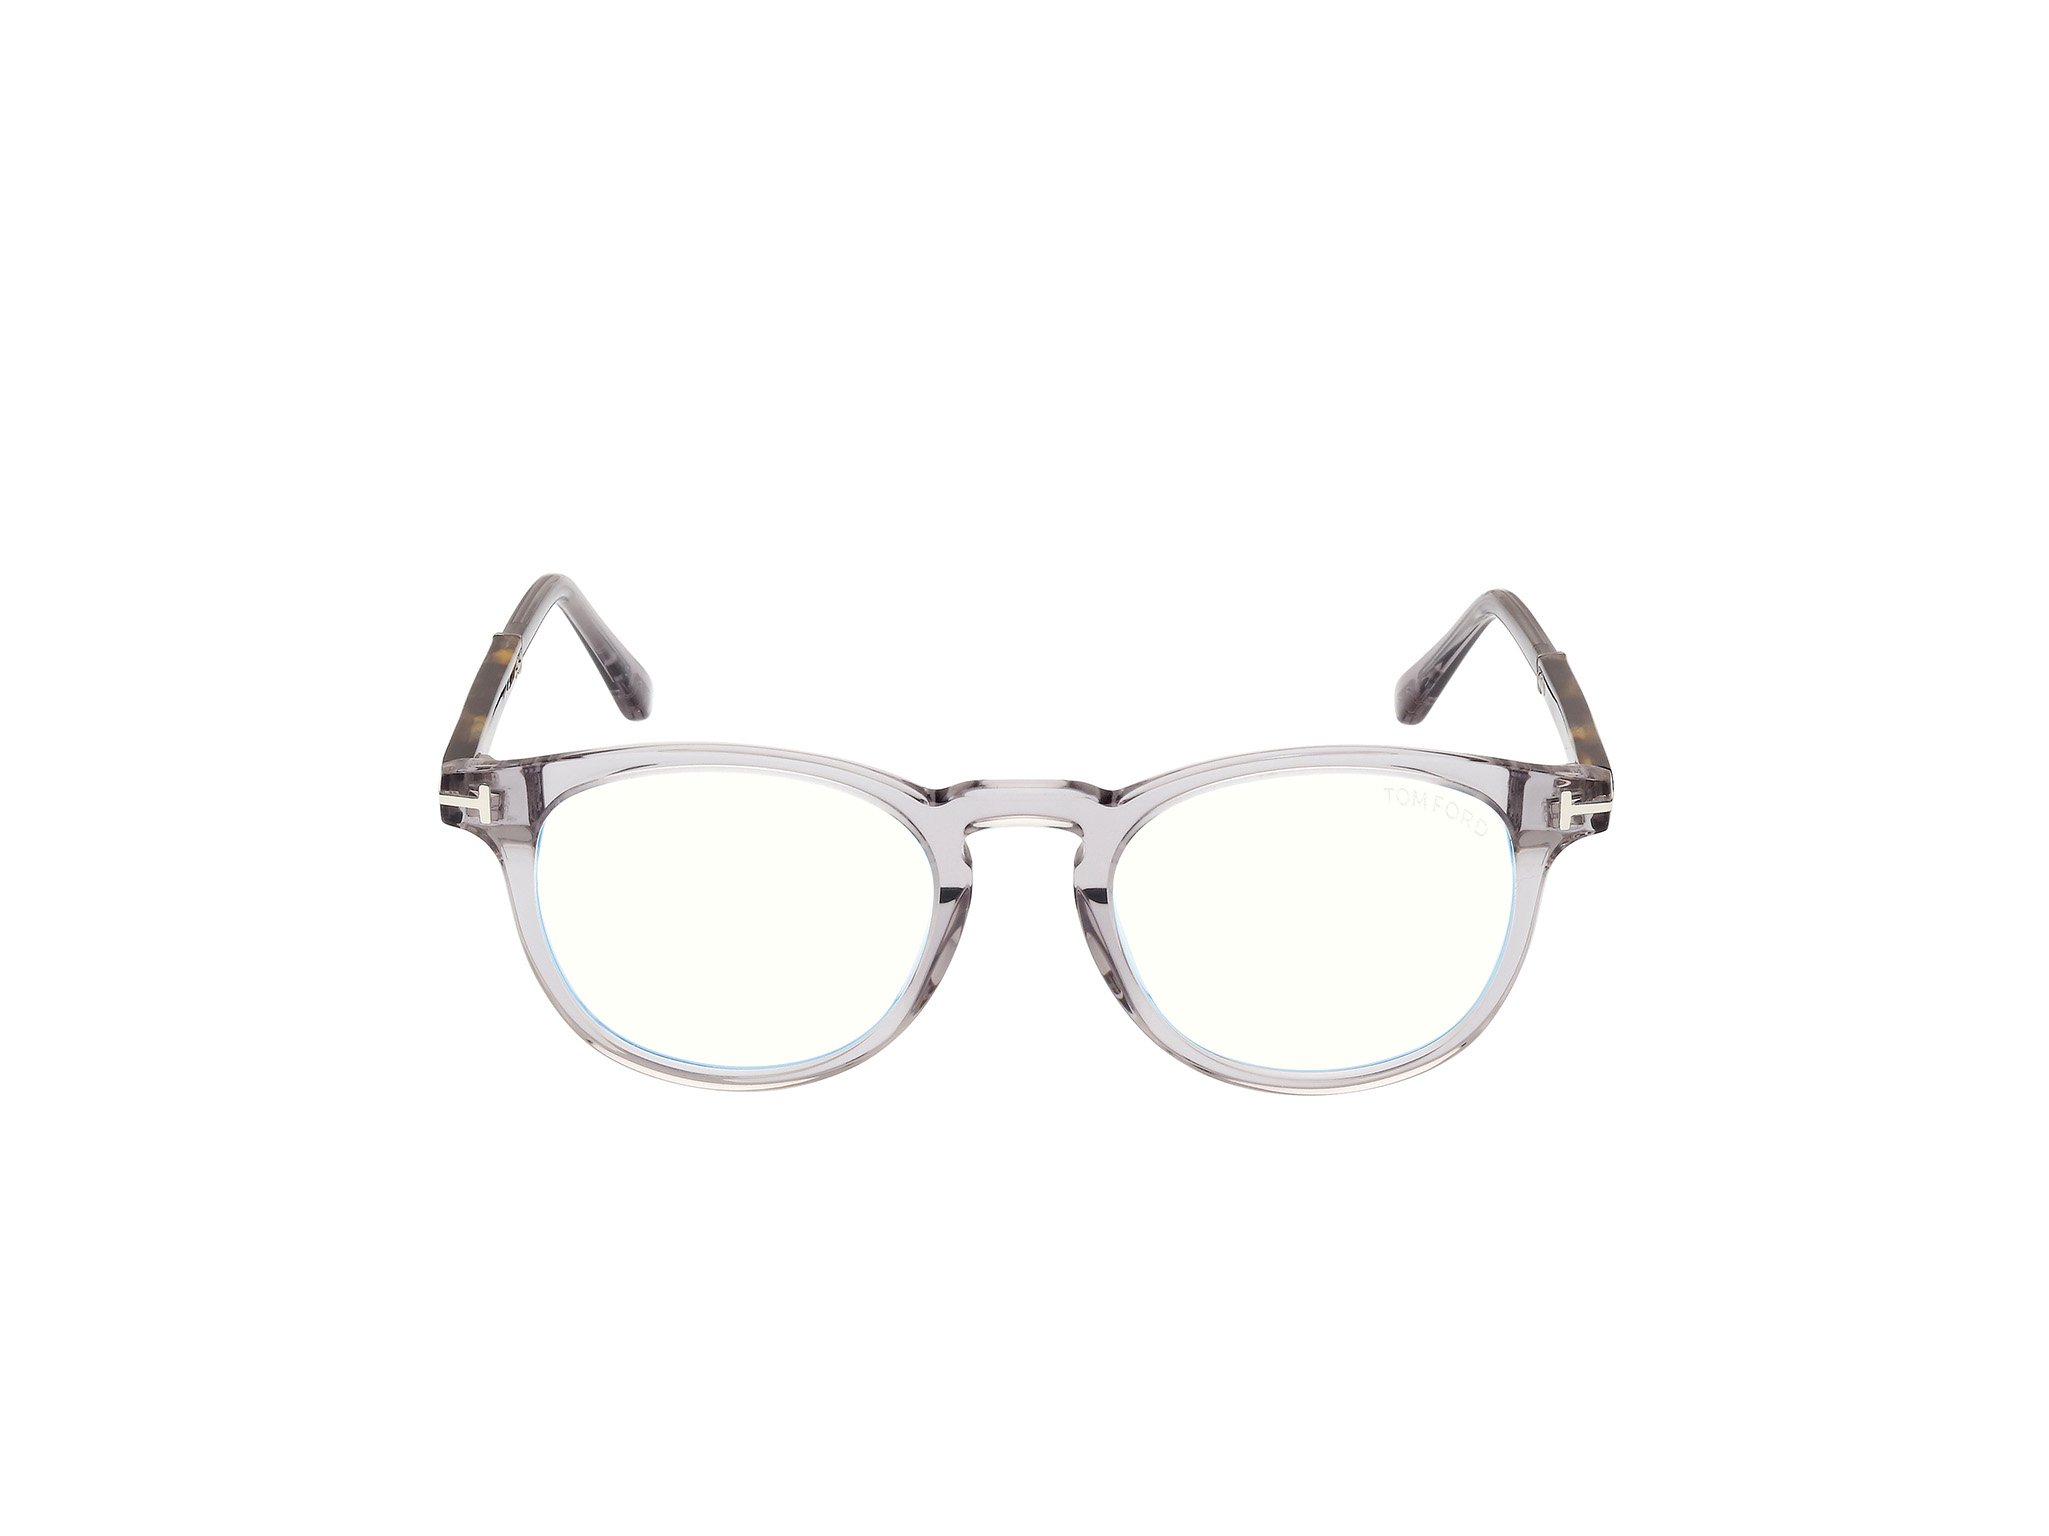 Das Bild zeigt die Korrektionsbrille FT5891-B 020 von der Marke Tom Ford in silber.